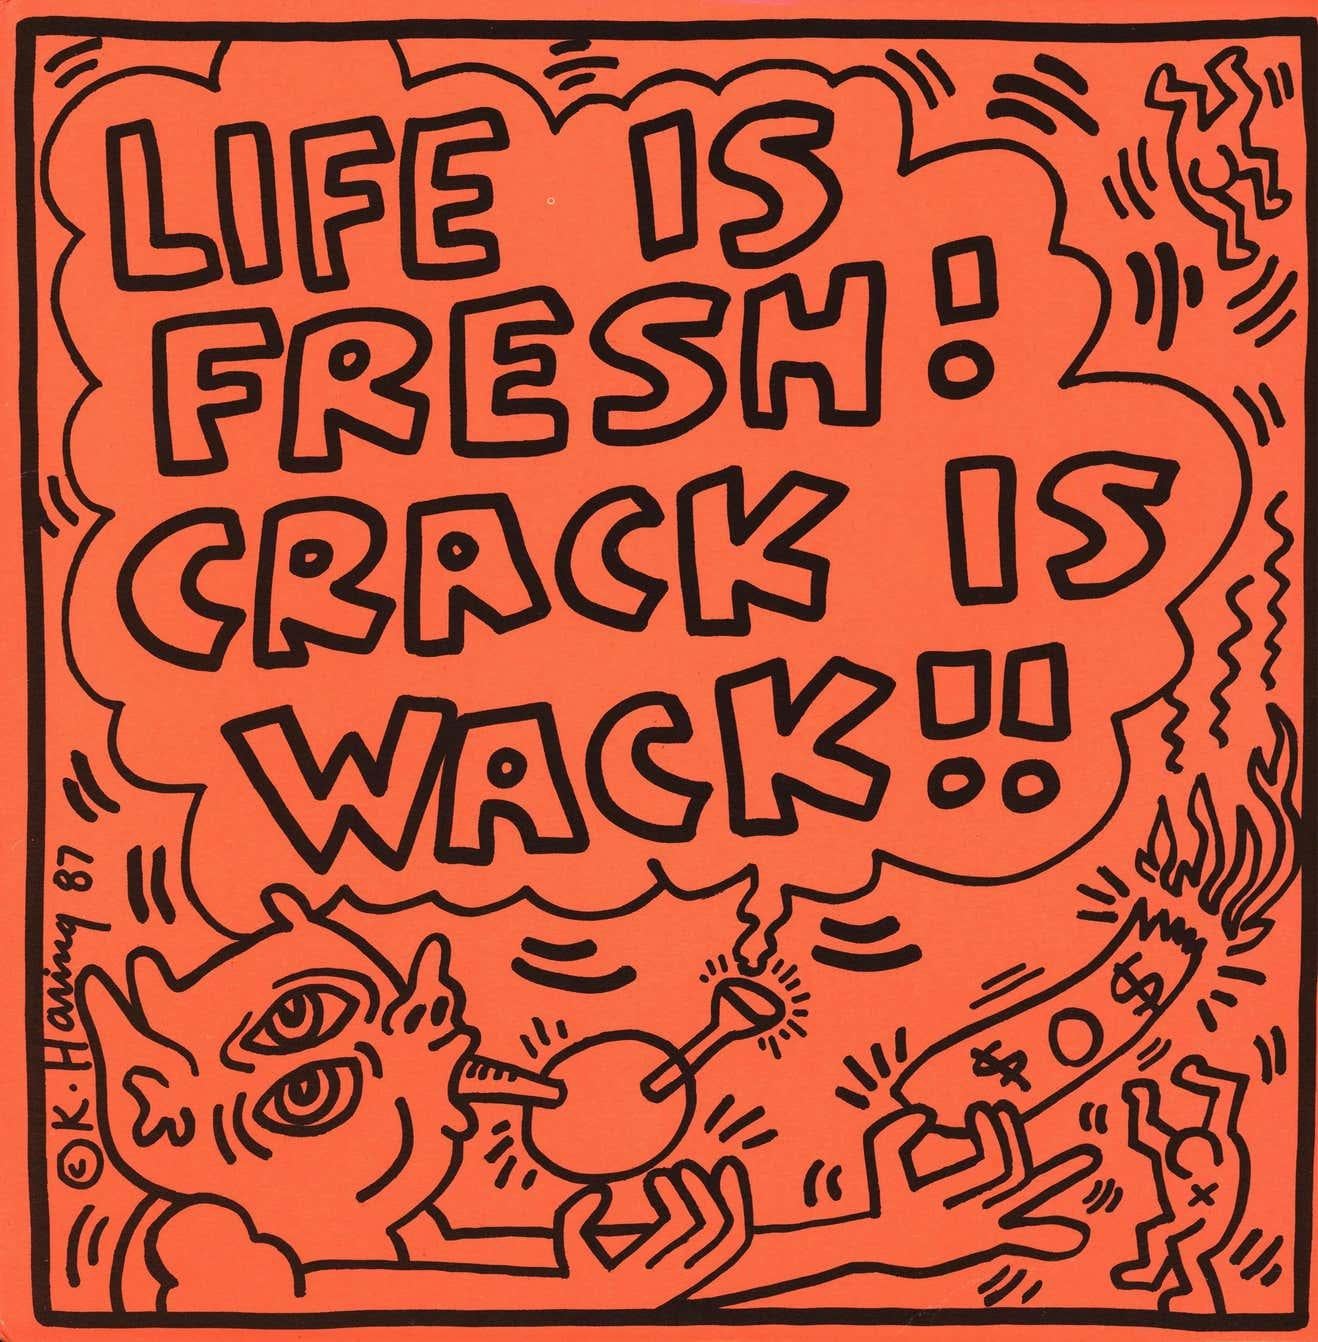 Keith Haring Original Album Cover Art : un ensemble de 15+ œuvres (1983-1988) :
Une collection rare de 16 pochettes de disques illustrées de Keith Haring des années 1980 accompagnées de leurs albums vinyles respectifs. On y trouve notamment le très